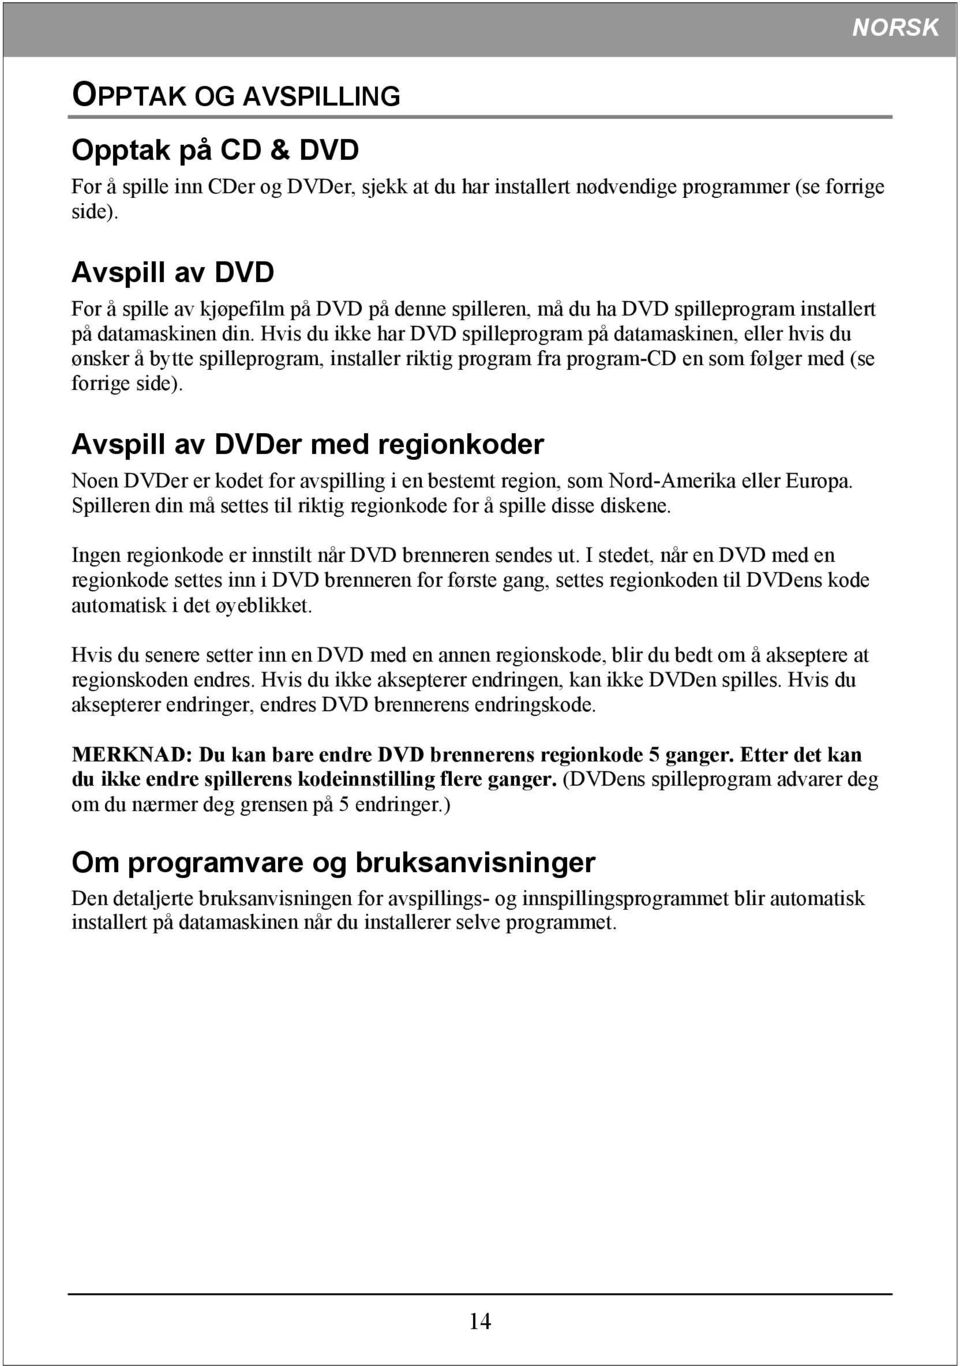 Hvis du ikke har DVD spilleprogram på datamaskinen, eller hvis du ønsker å bytte spilleprogram, installer riktig program fra program-cd en som følger med (se forrige side).